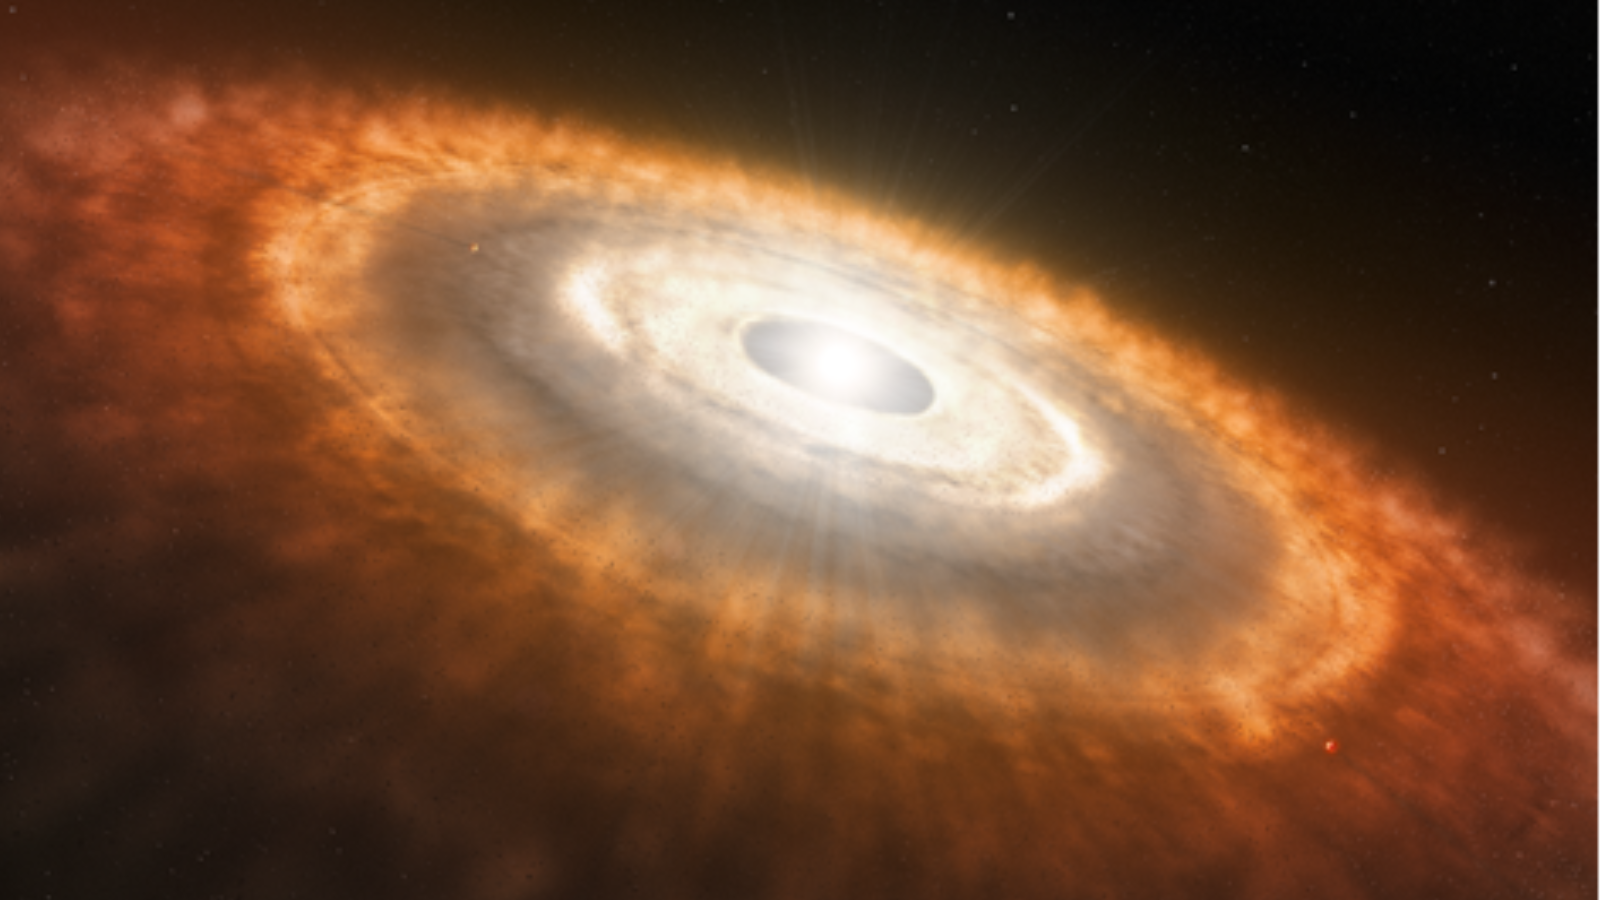 Ilustración de una estrella blanca brillante rodeada por un enorme halo de gas, polvo y otros elementos rojizos.